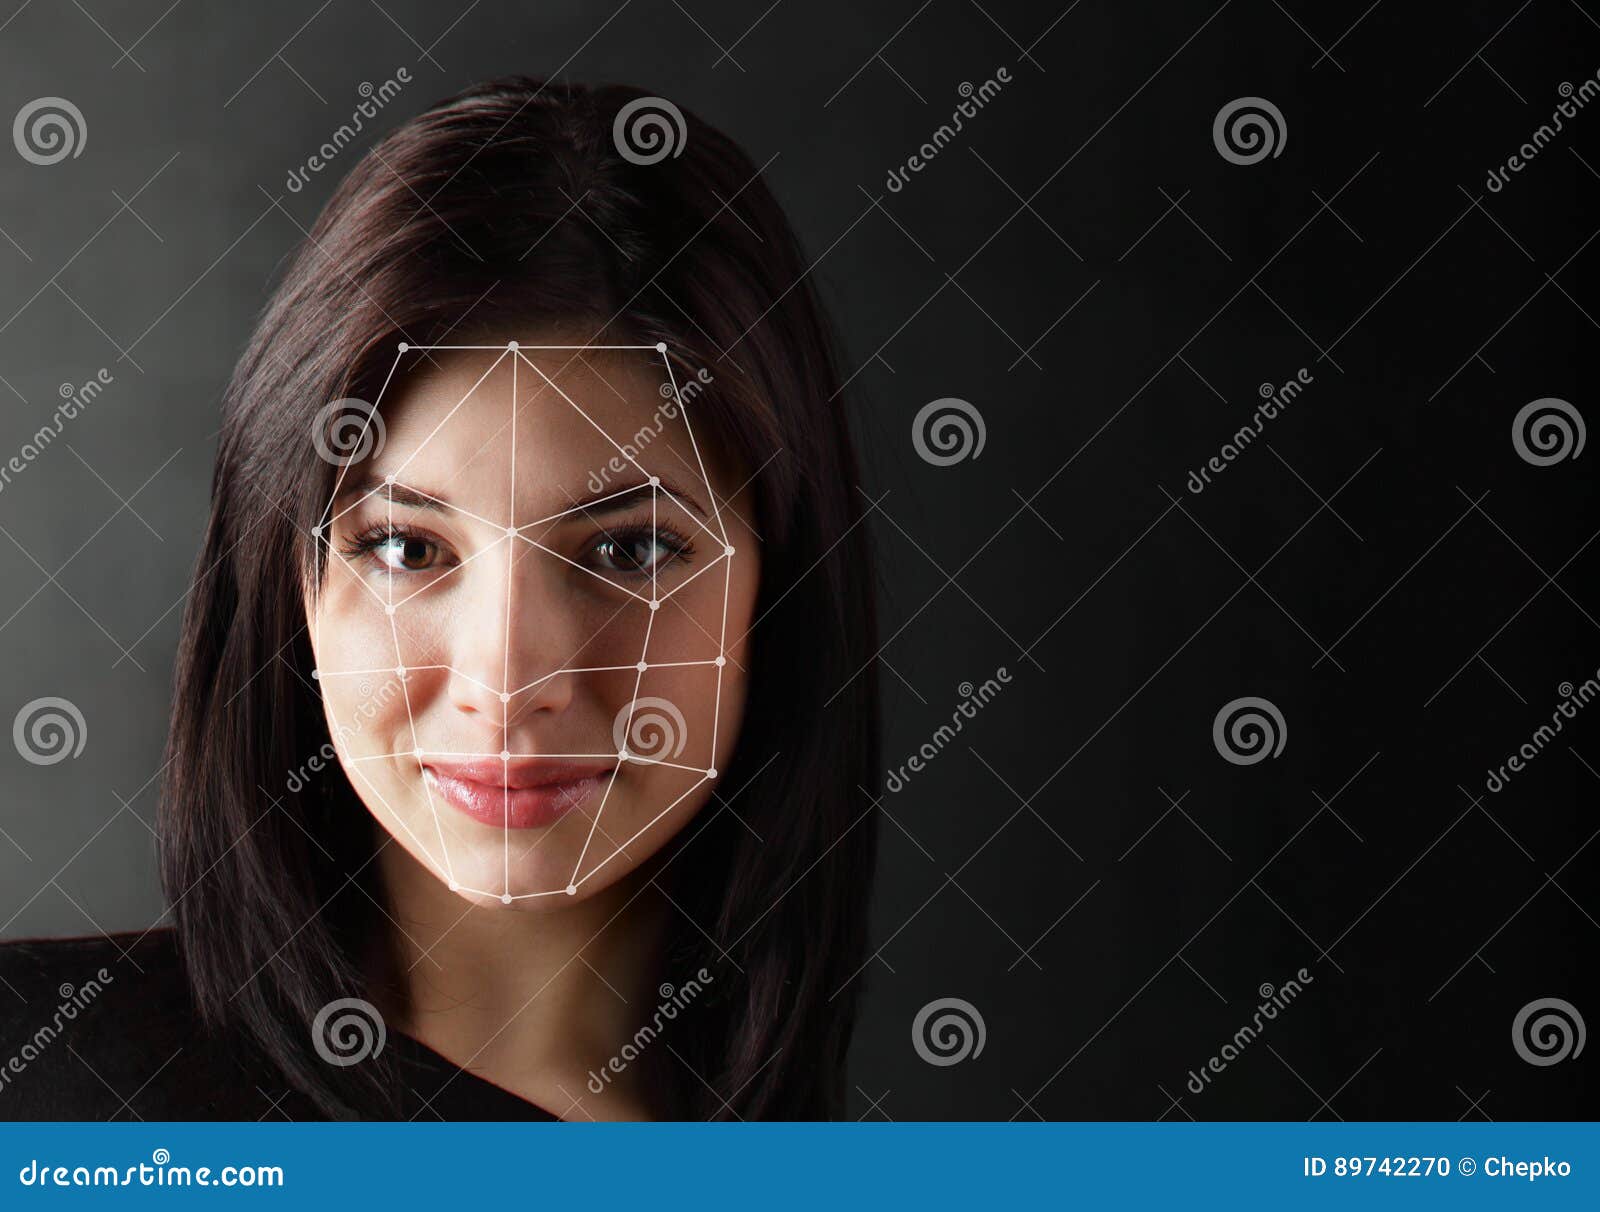 biometric verification - woman face detection,